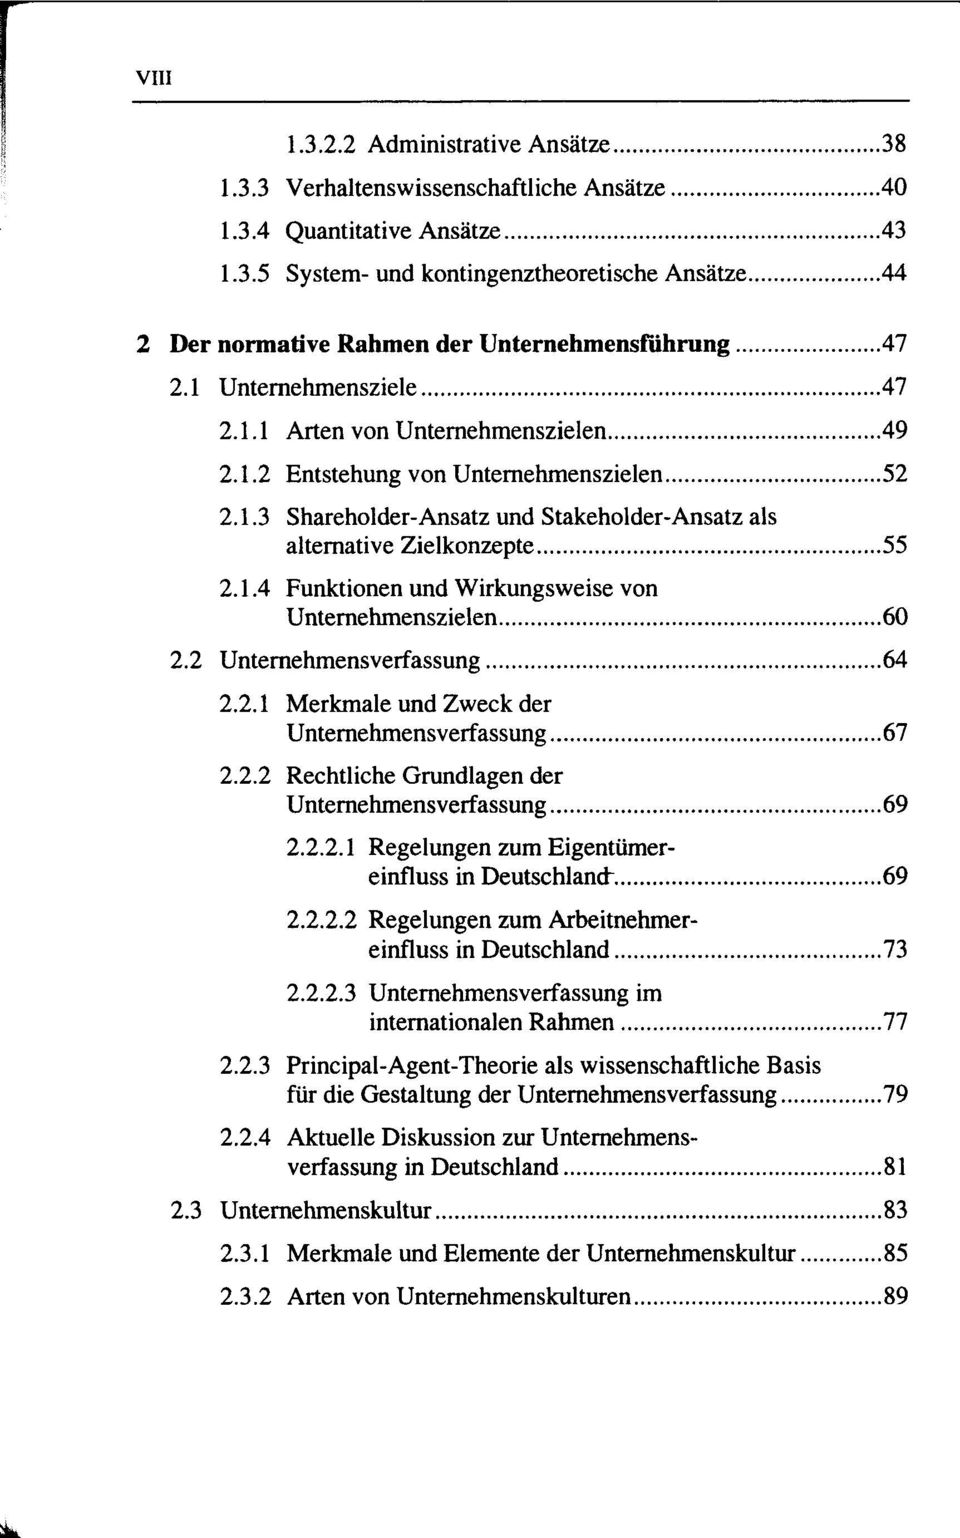 2 Unternehmensverfassung 64 2.2.1 Merkmale und Zweck der Unternehmensverfassung 67 2.2.2 Rechtliche Grundlagen der Unternehmensverfassung 69 2.2.2.1 Regelungen zum Eigentümereinfluss in Deutschland" 69 2.